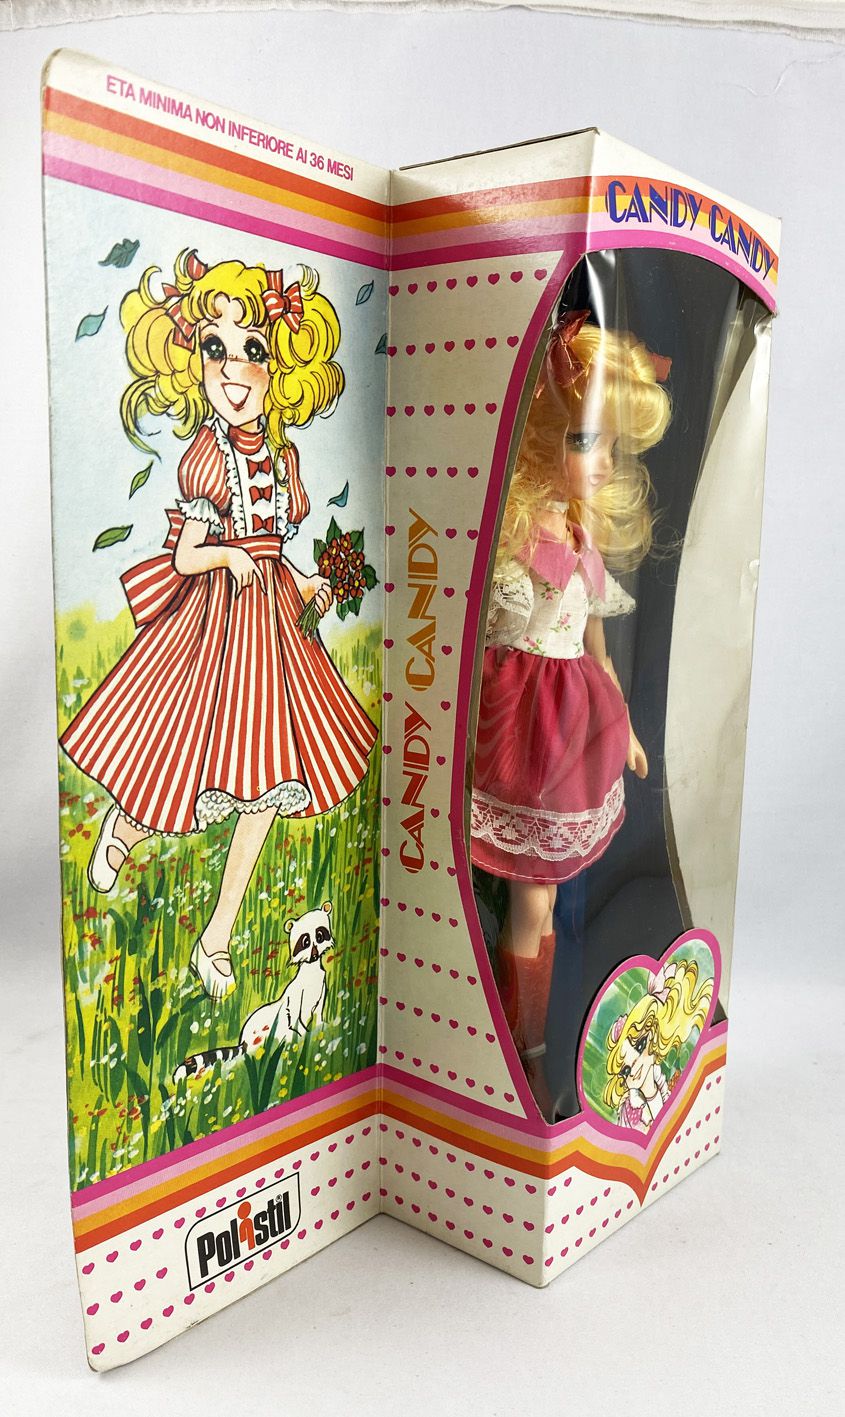 Vintage Candy Candy Doll Yumiko Igarashi 1970s anime Showa era Poppy brand  Retro  eBay